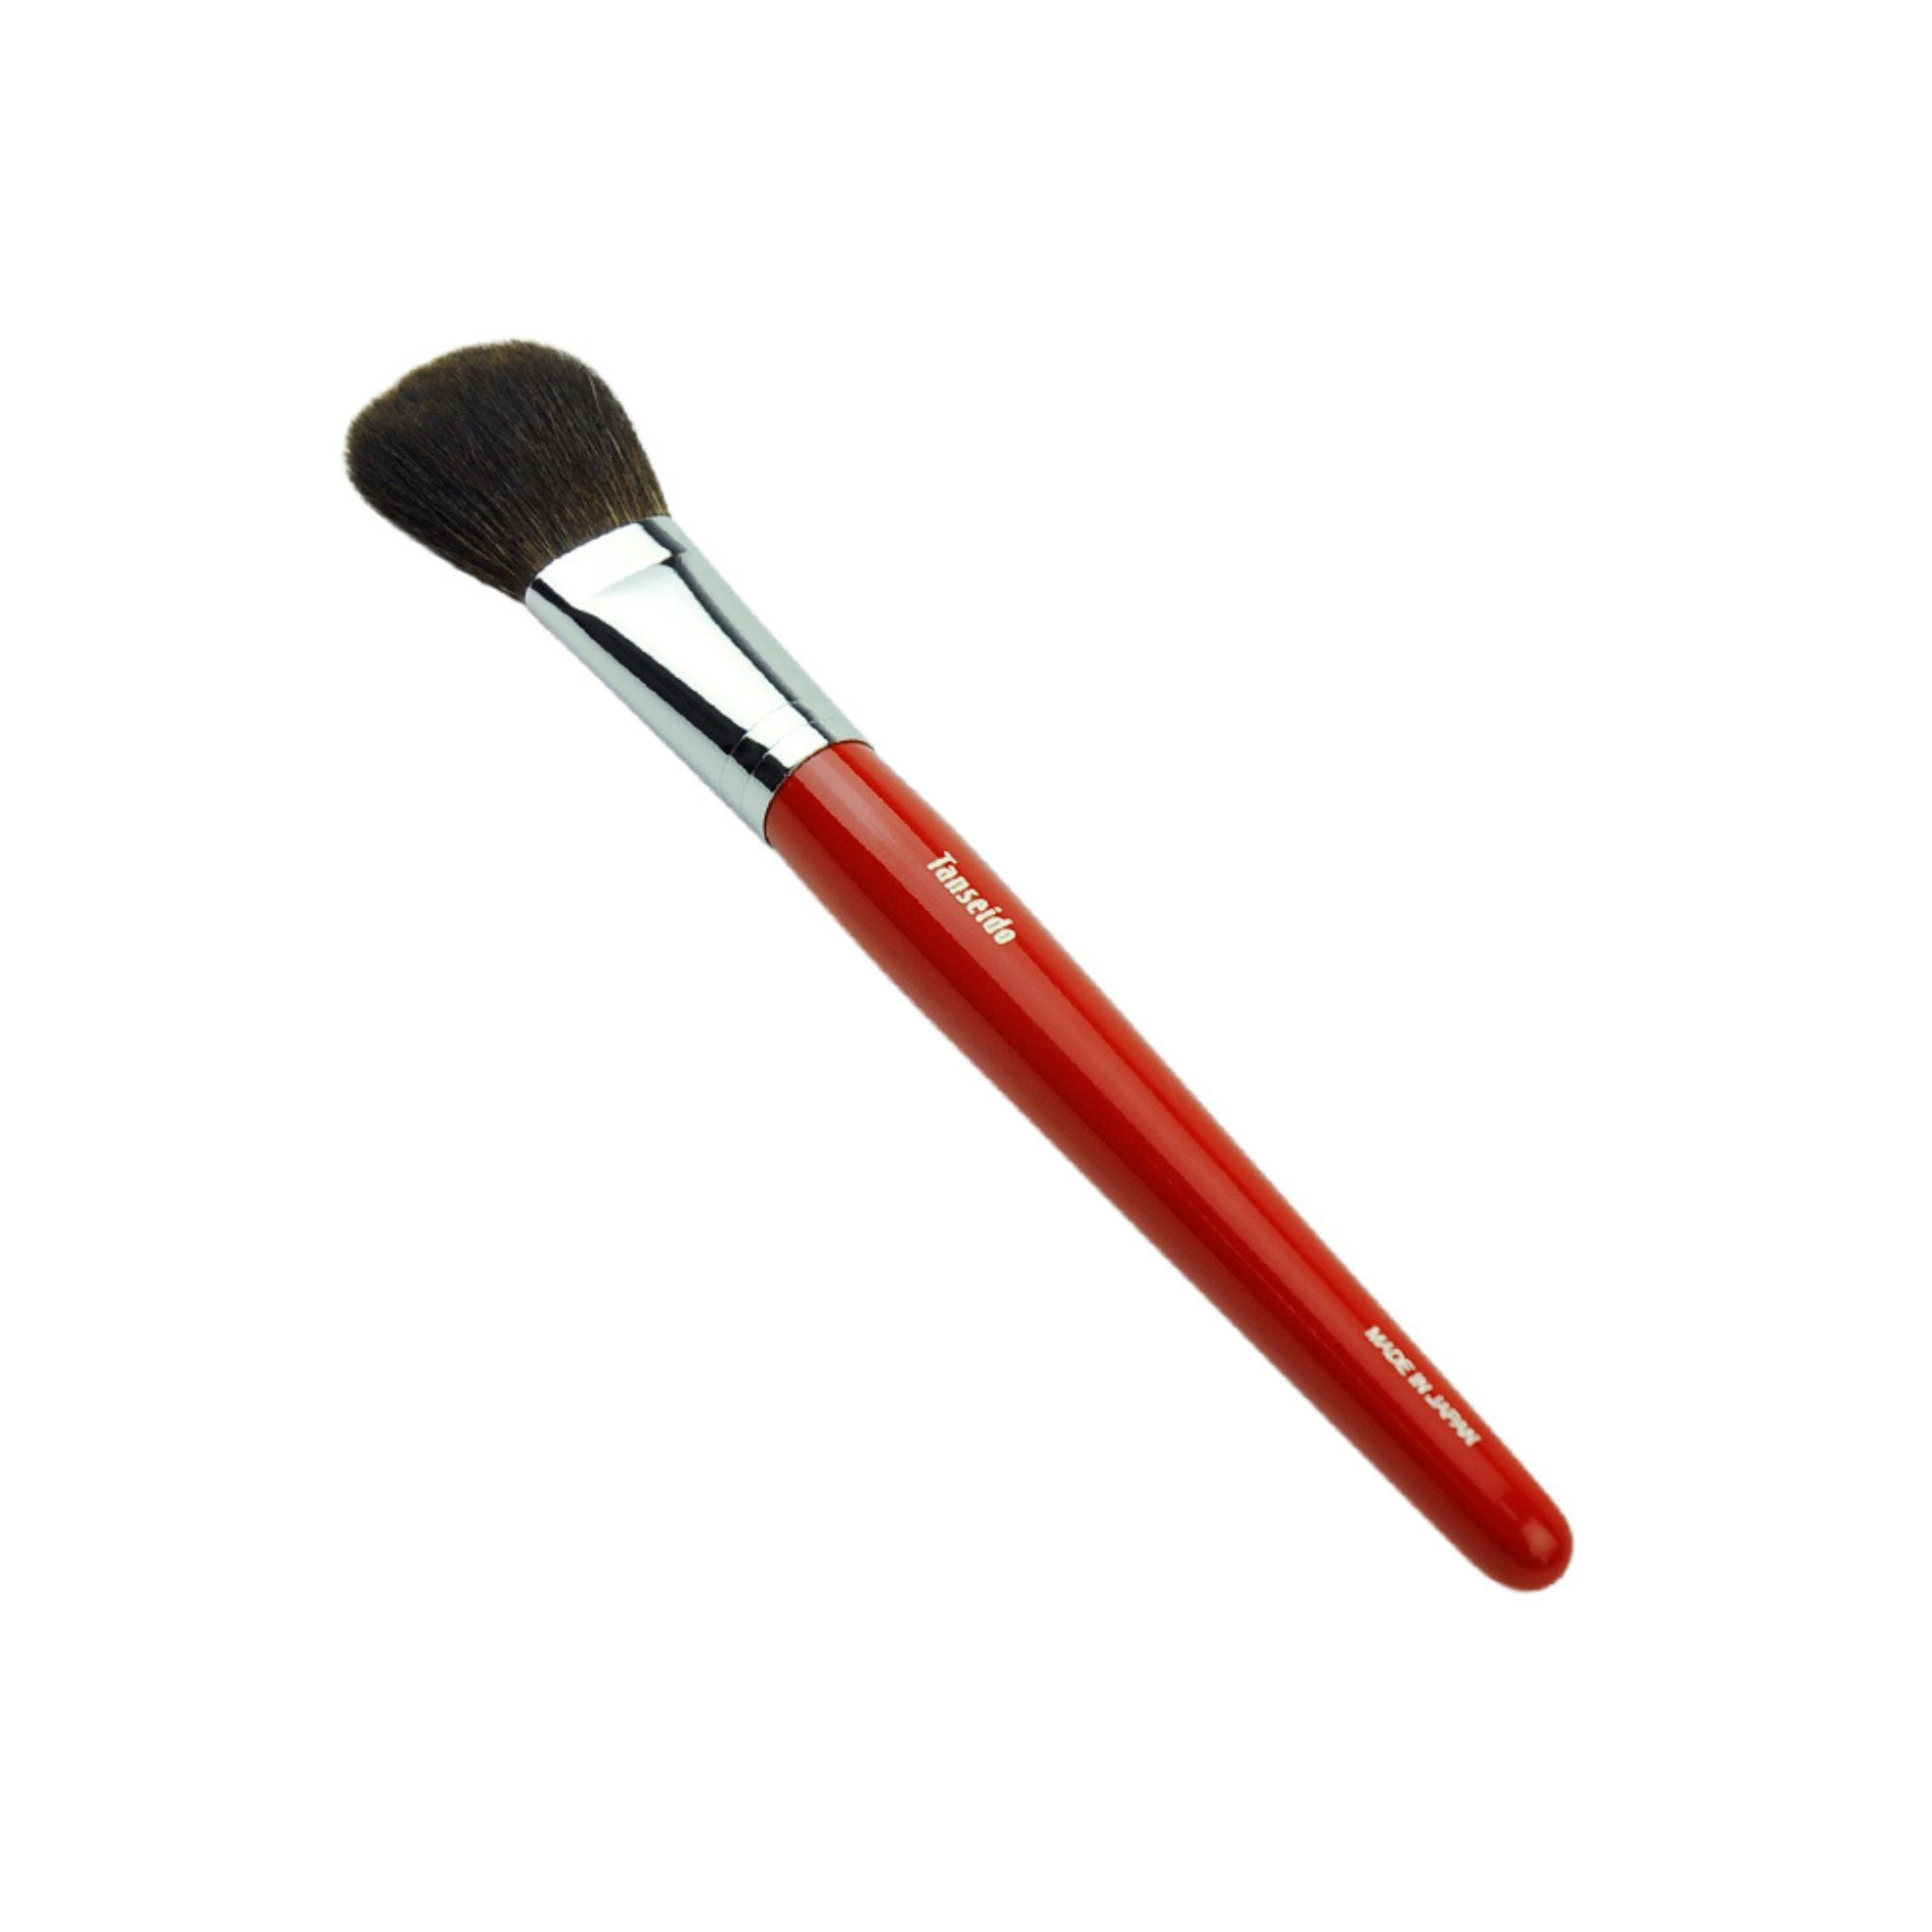 Tanseido YSQ20 Cheek Brush - Fude Beauty, Japanese Makeup Brushes